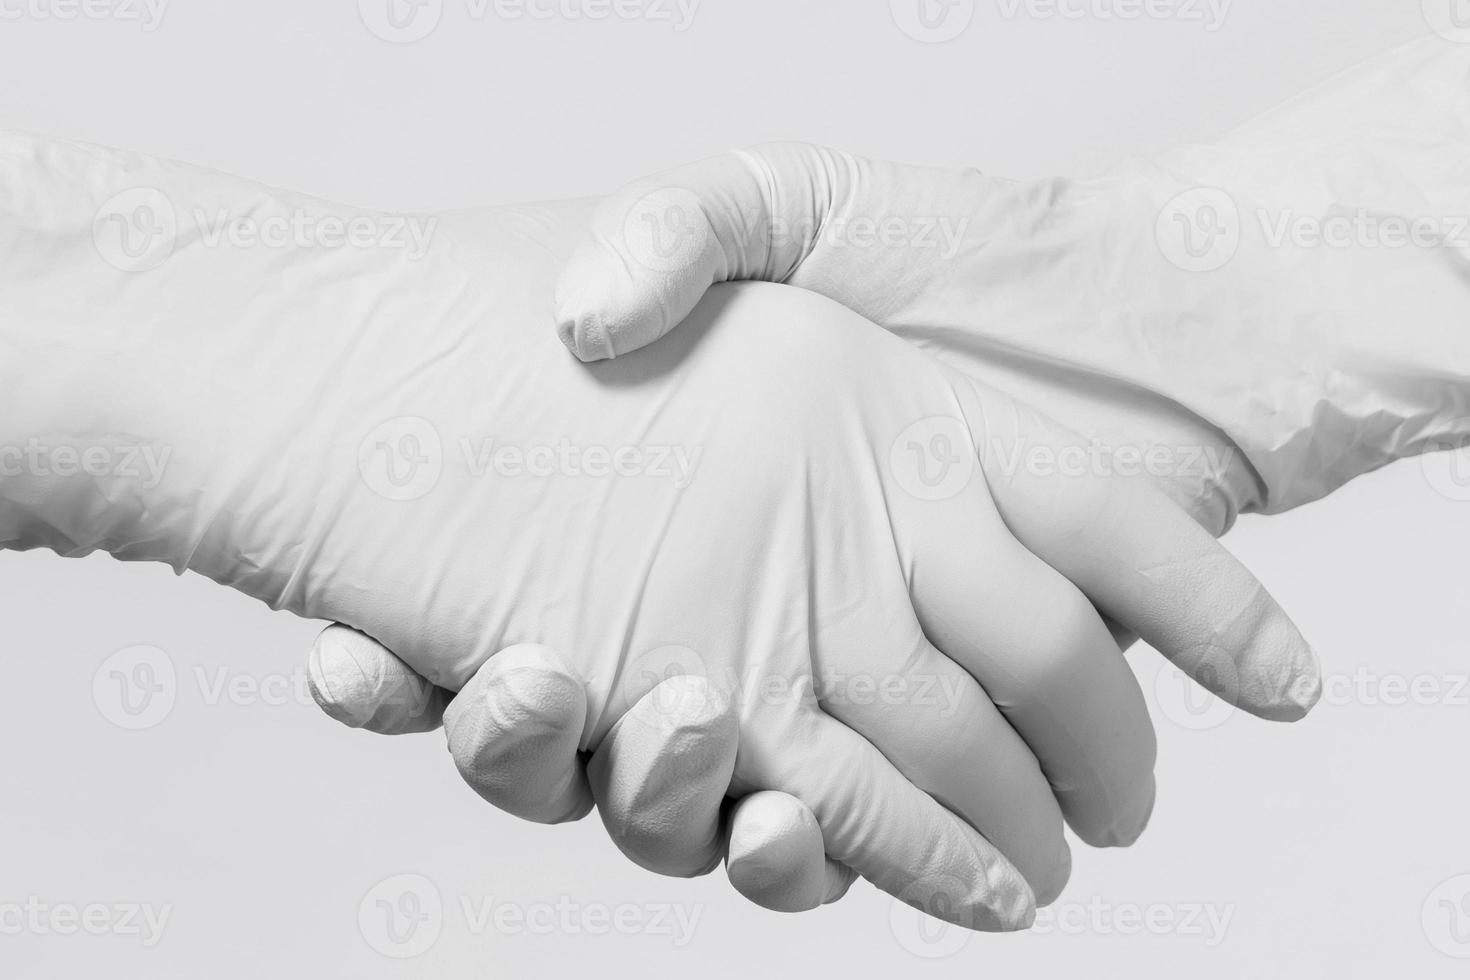 personnes portant des gants en latex se saluant photo